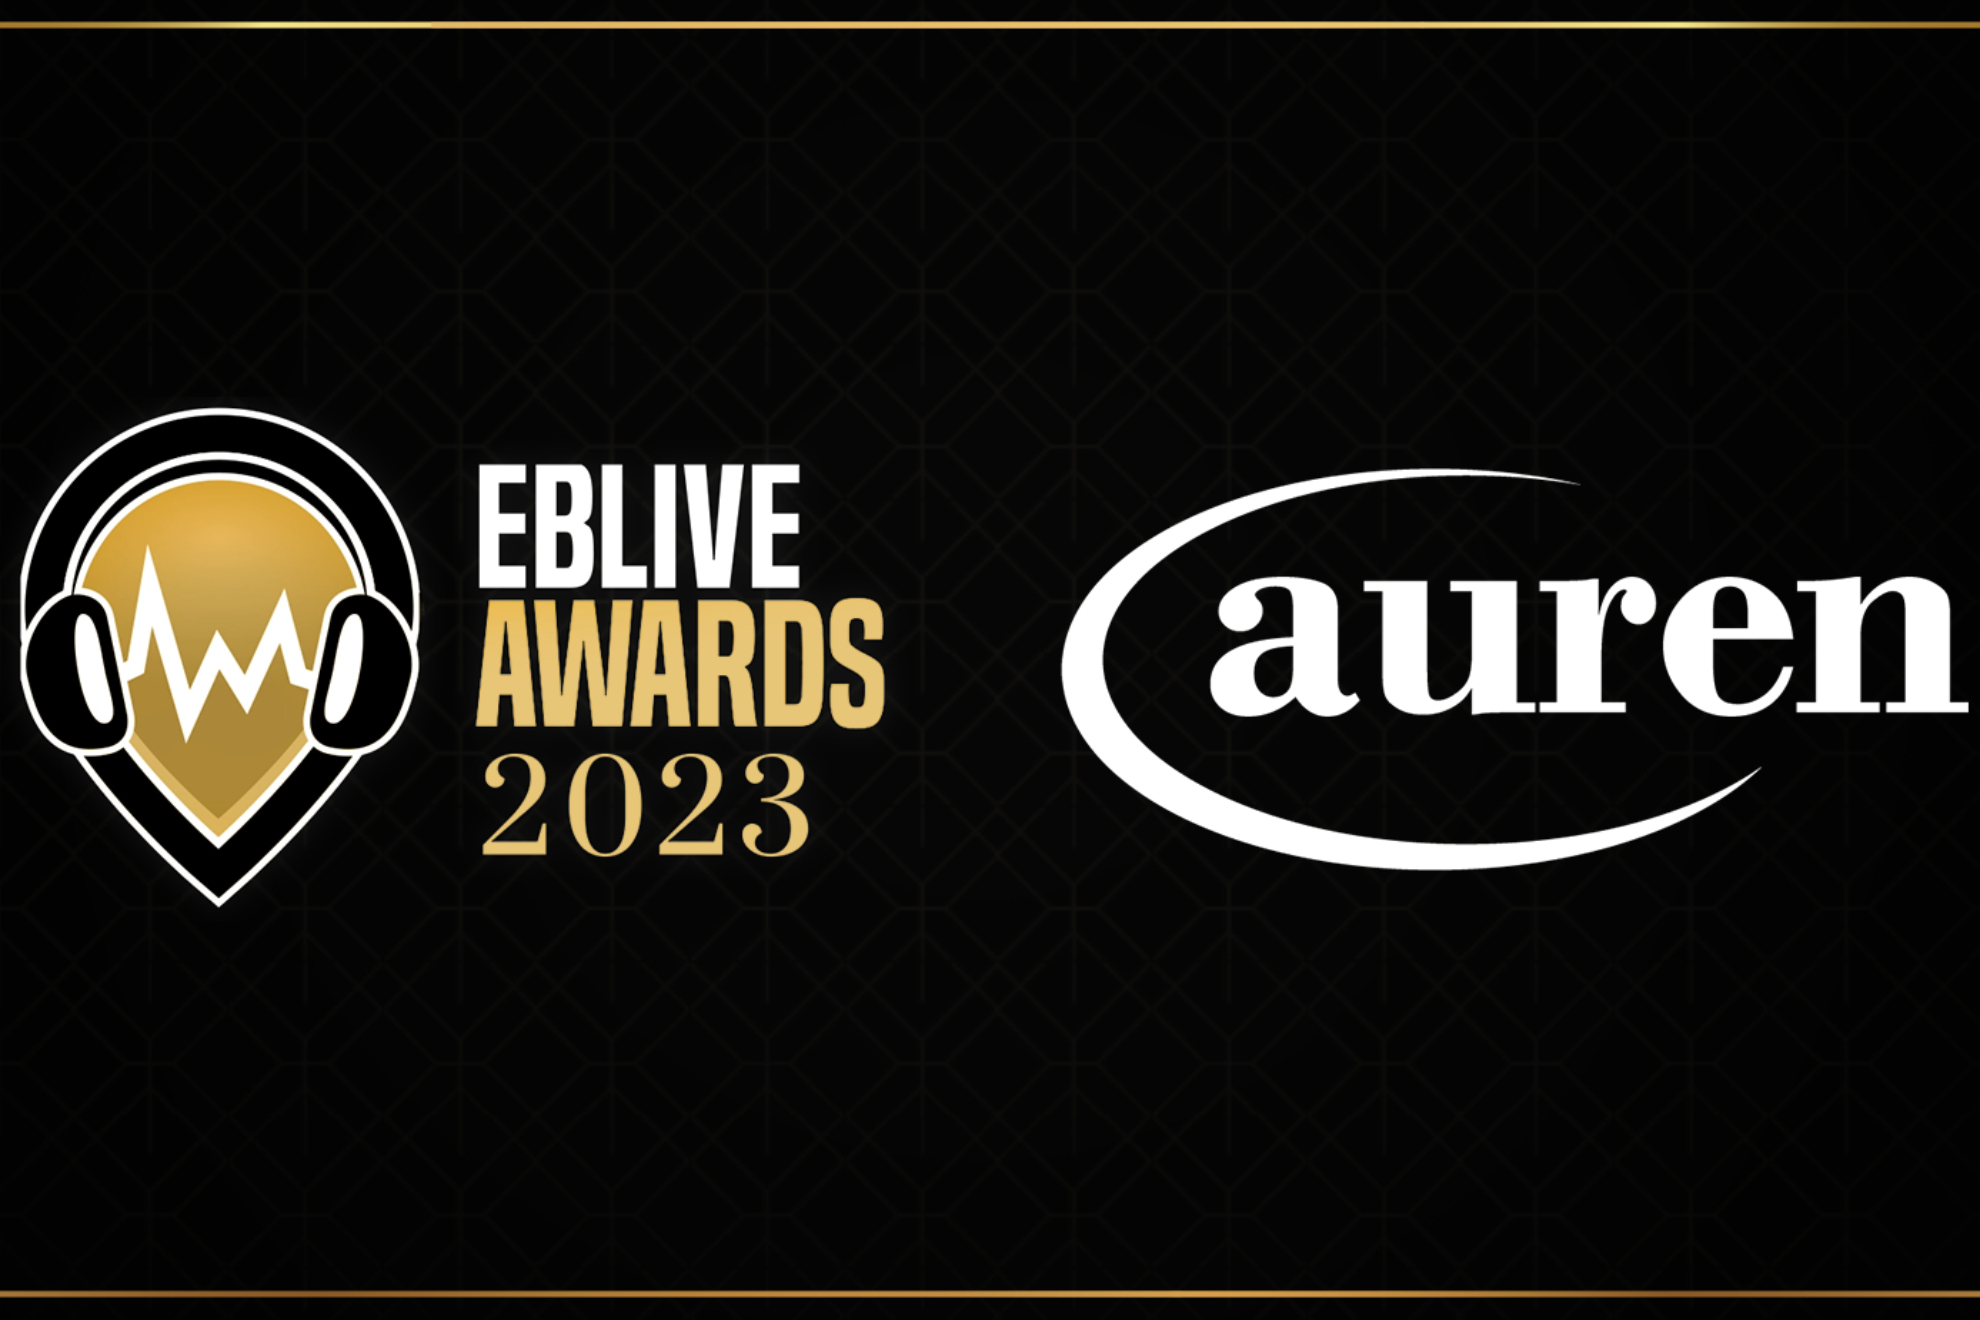 Auren pasa a ser patrocinador de la segunda edición de los EBLIVE AWARDS